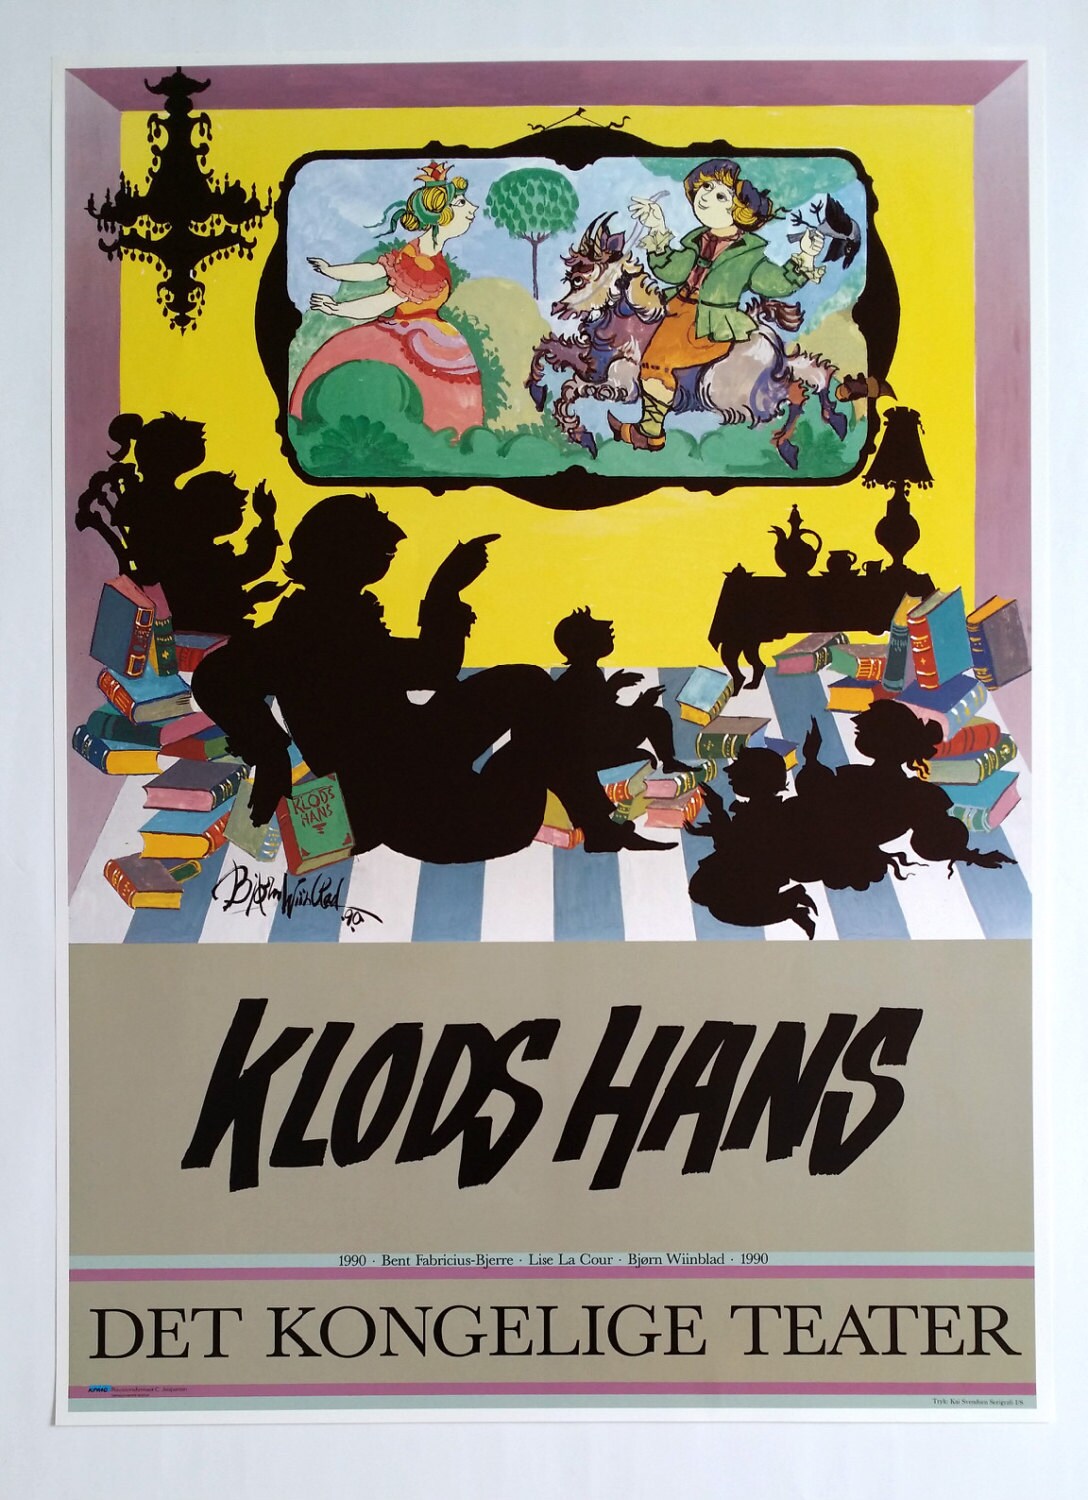 1990 Wiinblad's "Clumsy Hans" - Original Vintage Poster